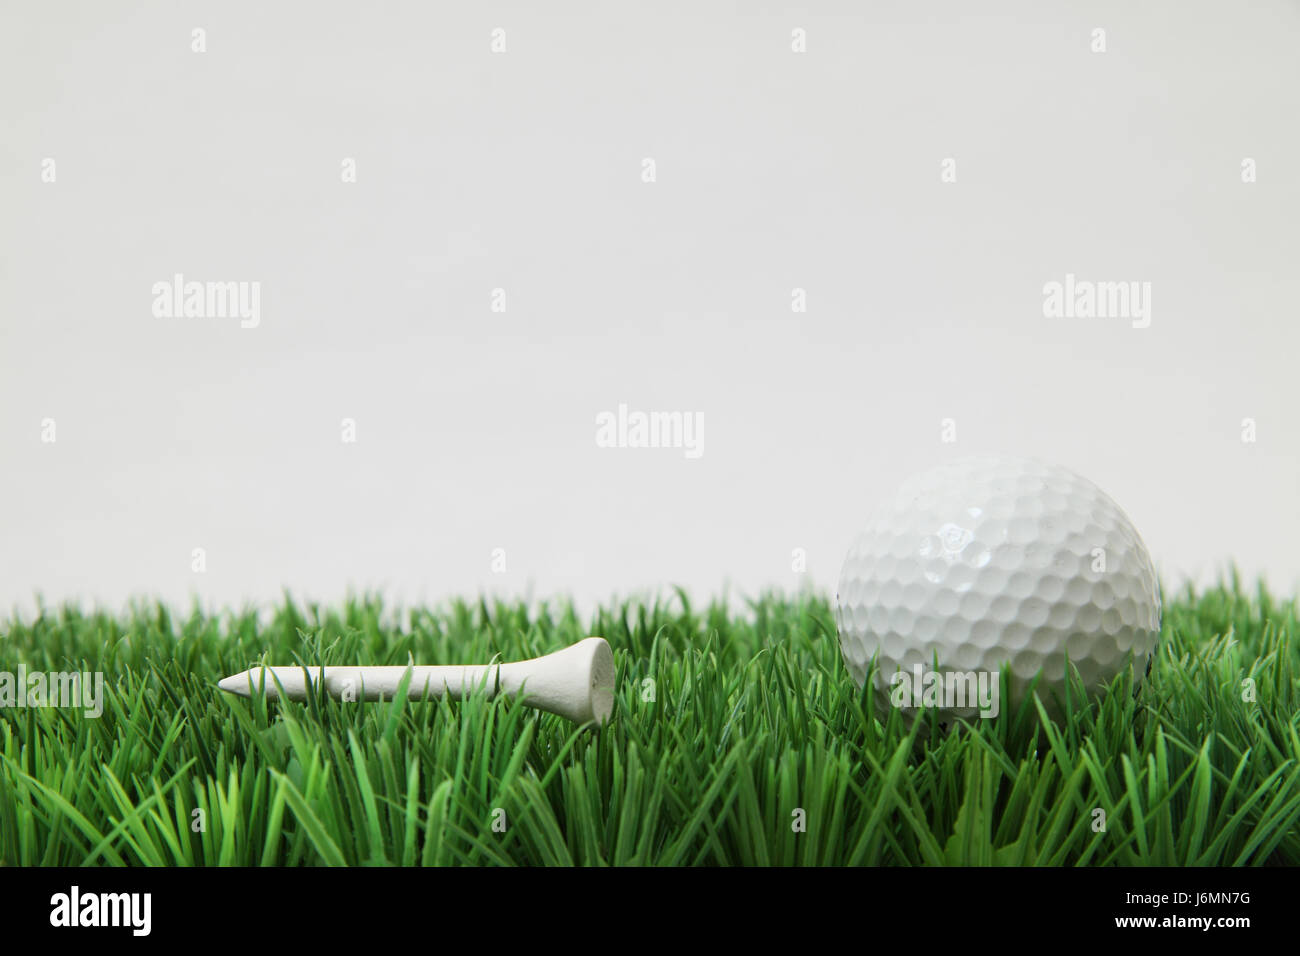 Il tè sport sport golfo palla palla da golf verde erba dettaglio gioco gioco nei tornei Foto Stock